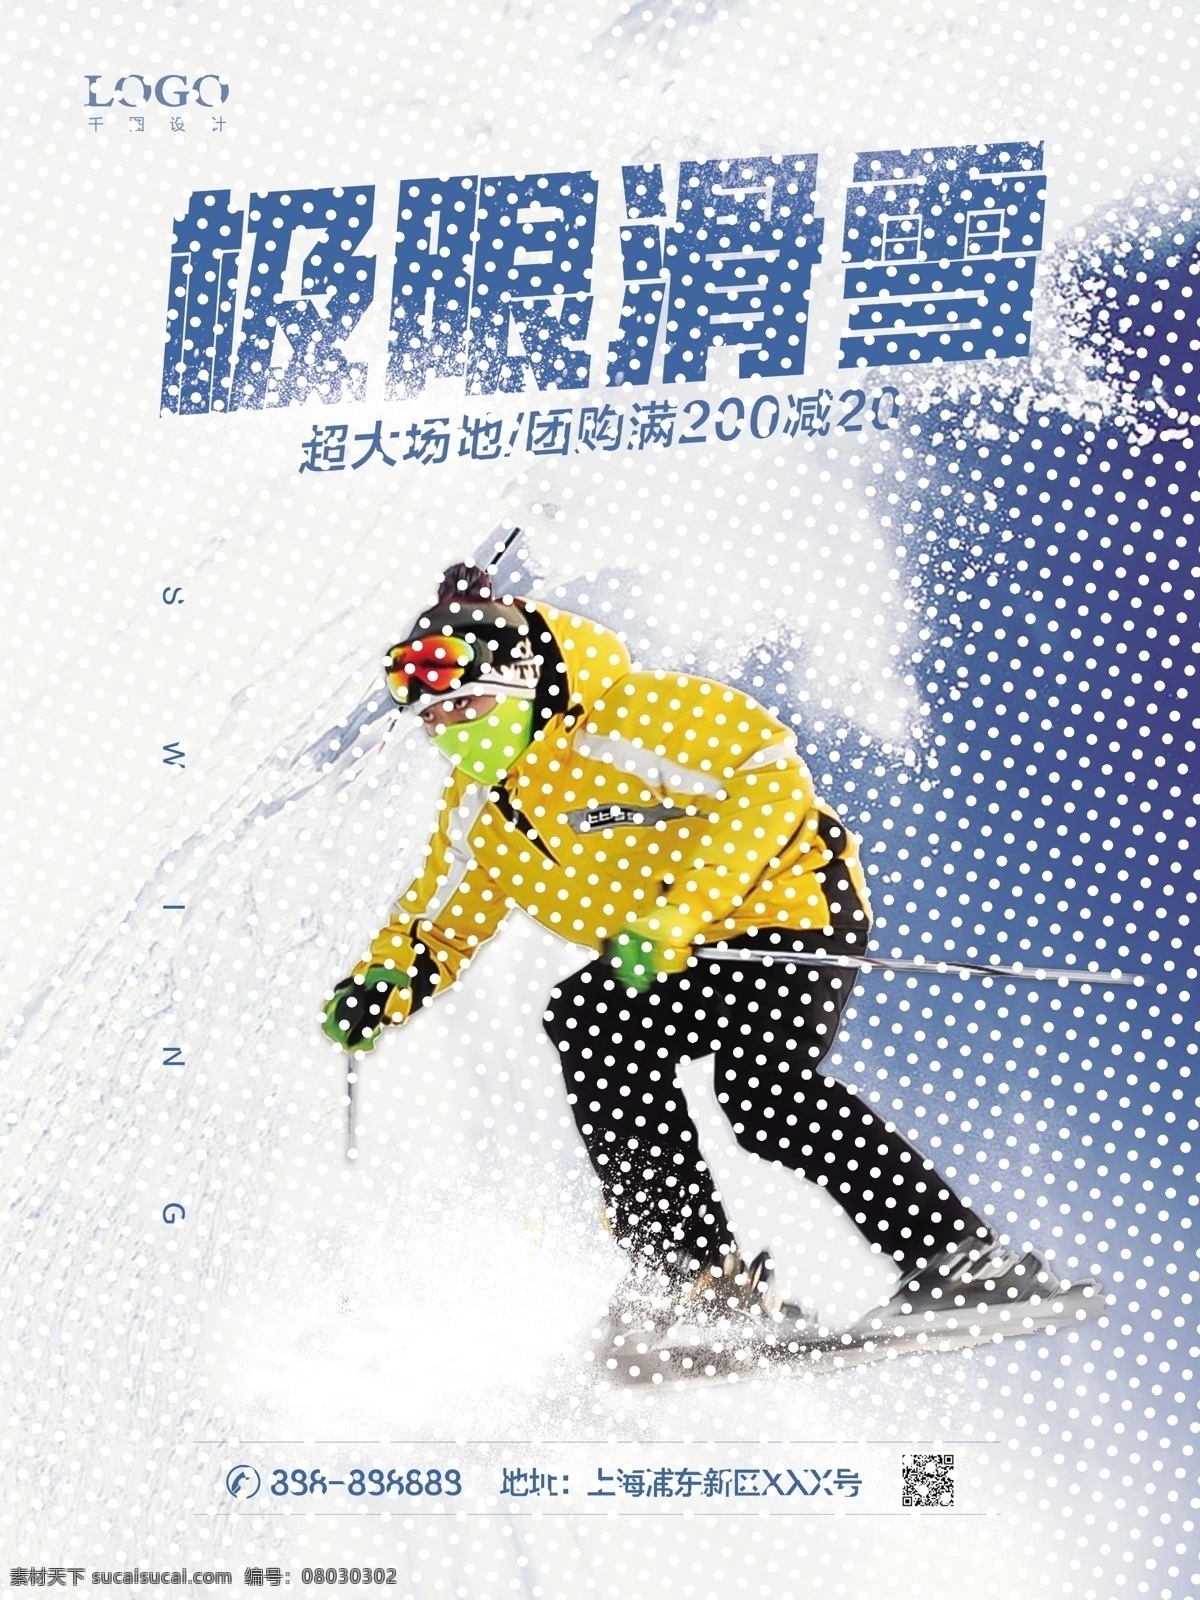 冬季 极限 滑雪 风暴 优惠 促销 旅游 户外运动 海报 简约 极限滑雪 下雪 白色 雪地 场地 滑雪板 滑雪装备 团购